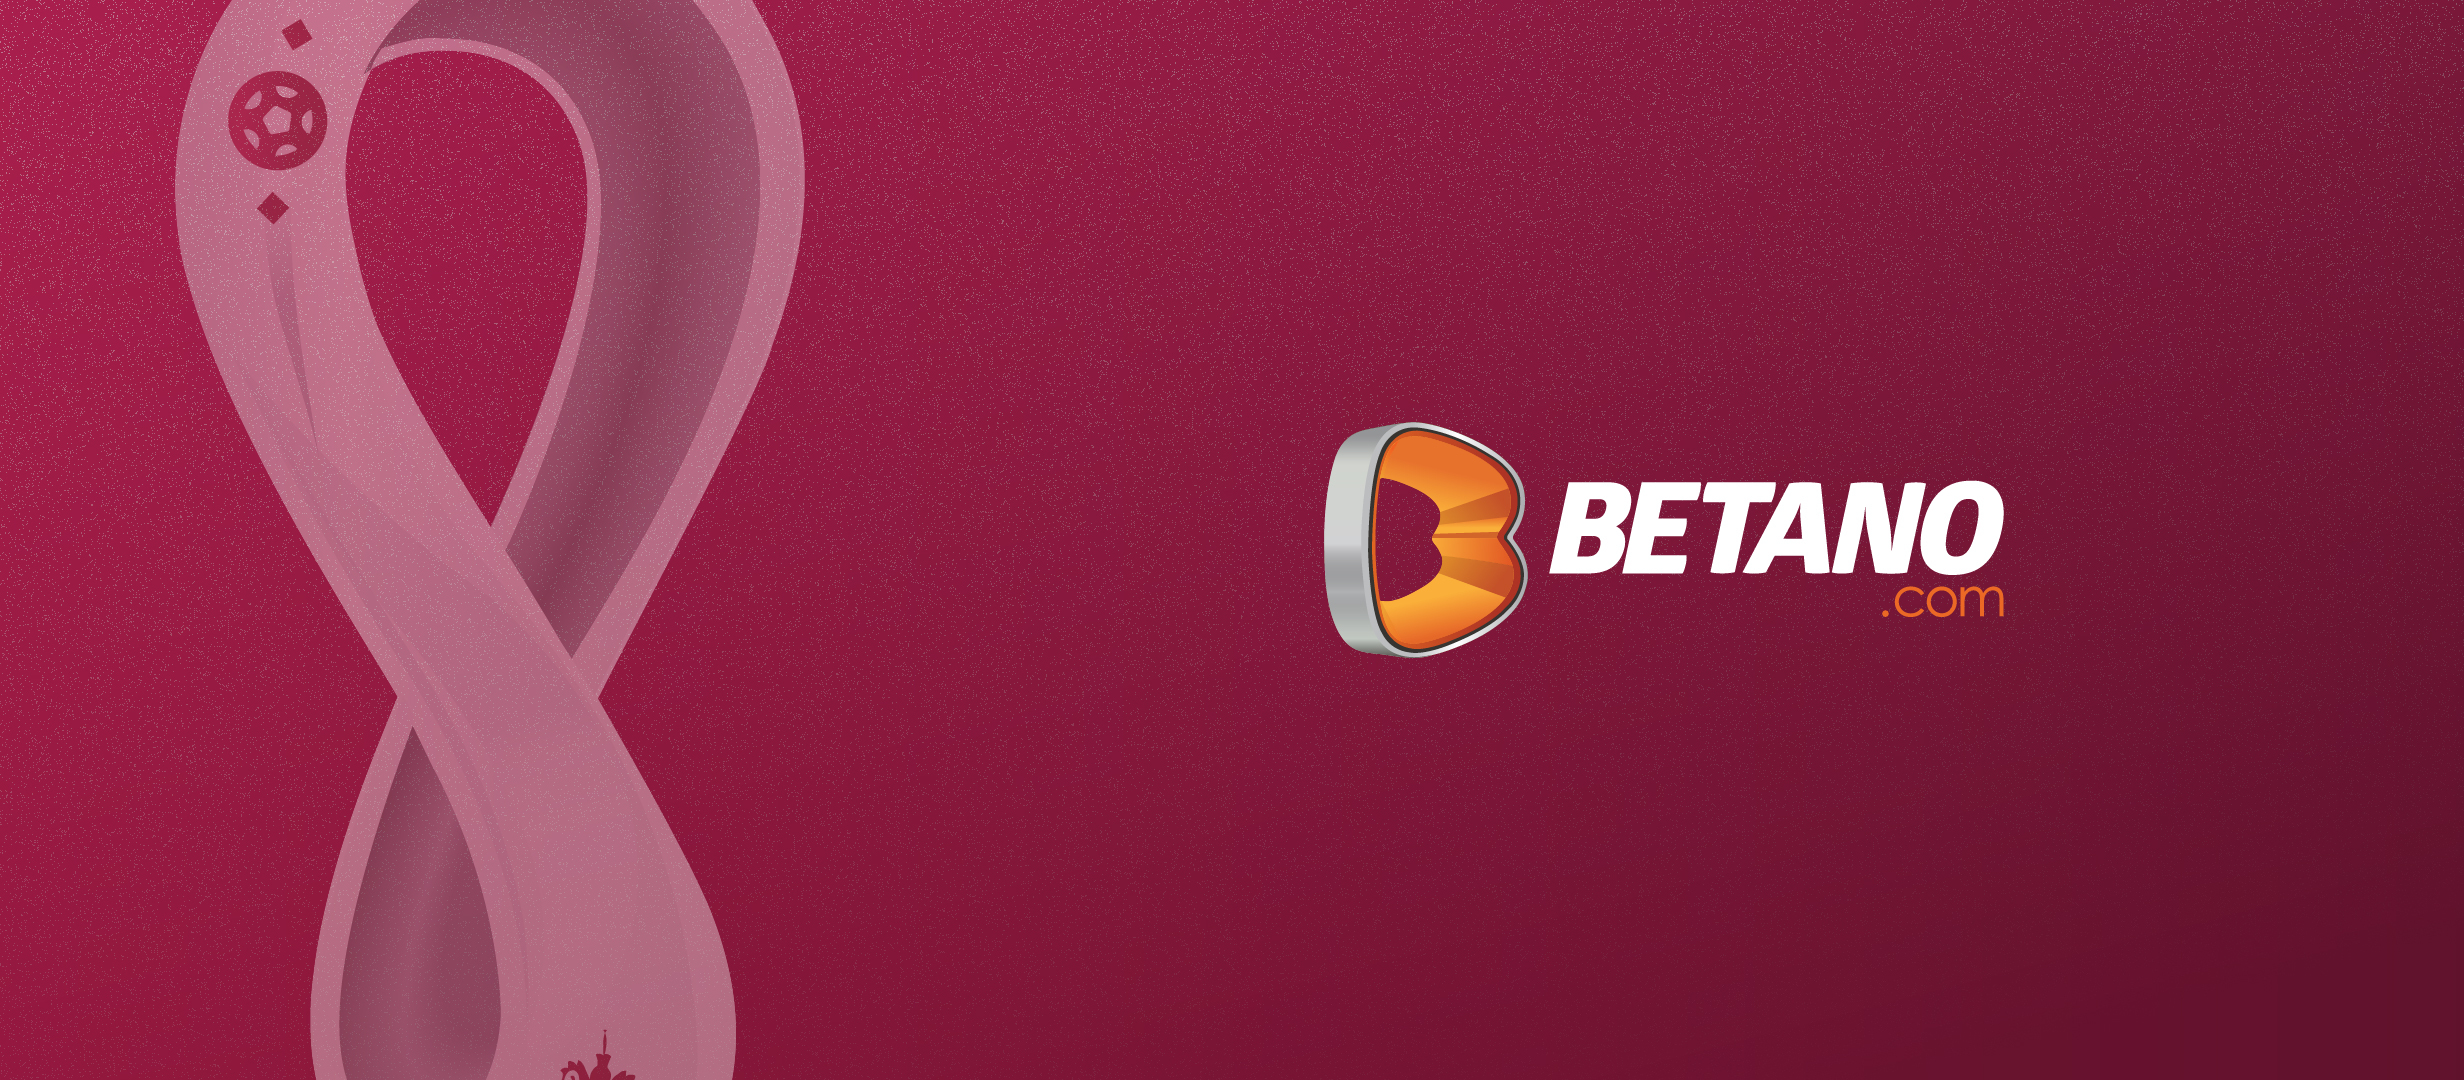 Betano - cote, oferte, promoţii pentru Cupa Mondială 2022 din Qatar